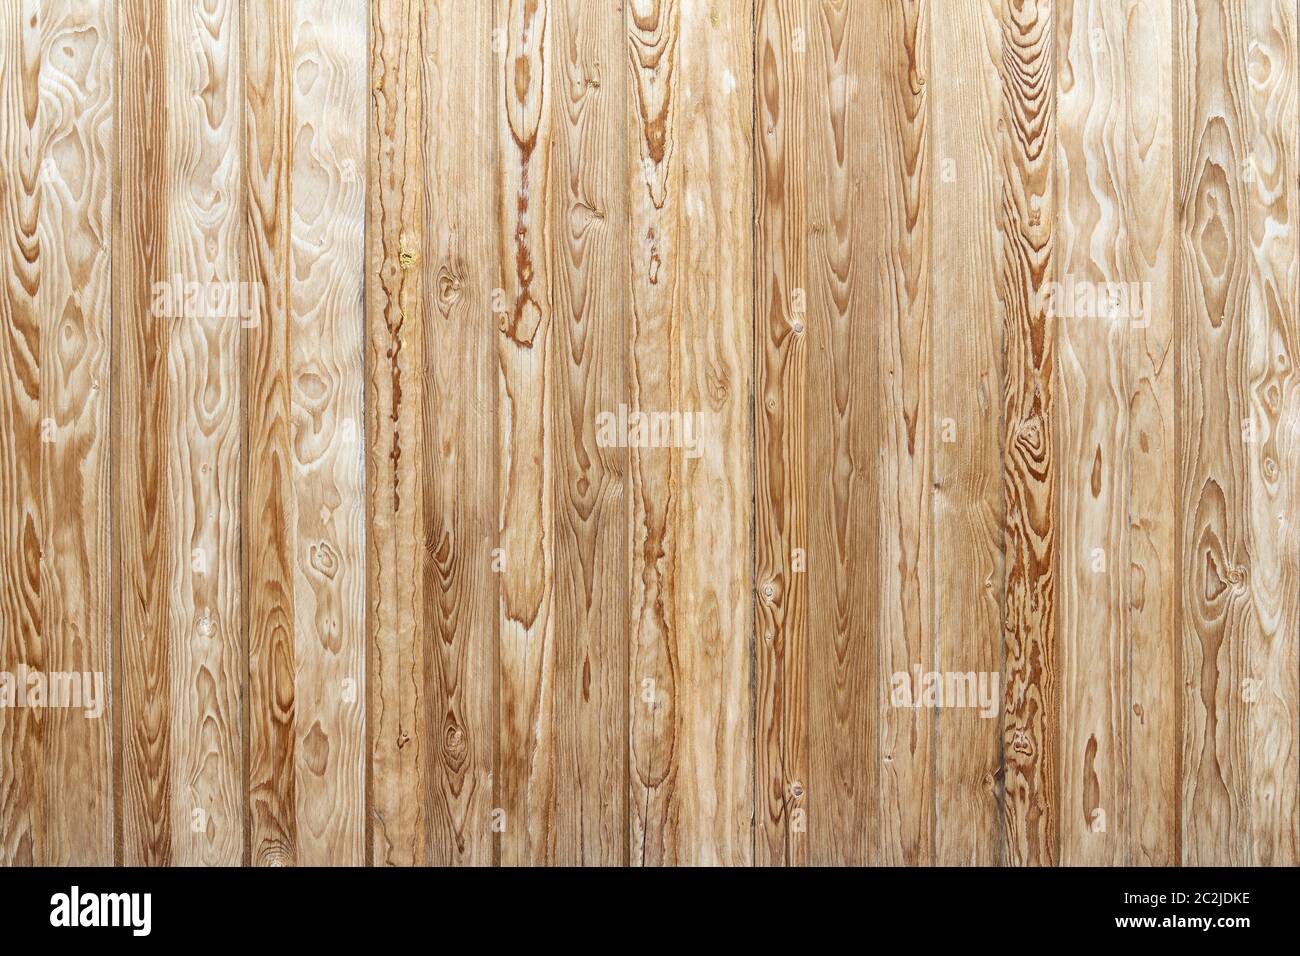 Mur rustique en bois brun de planches verticales à grain intense Banque D'Images